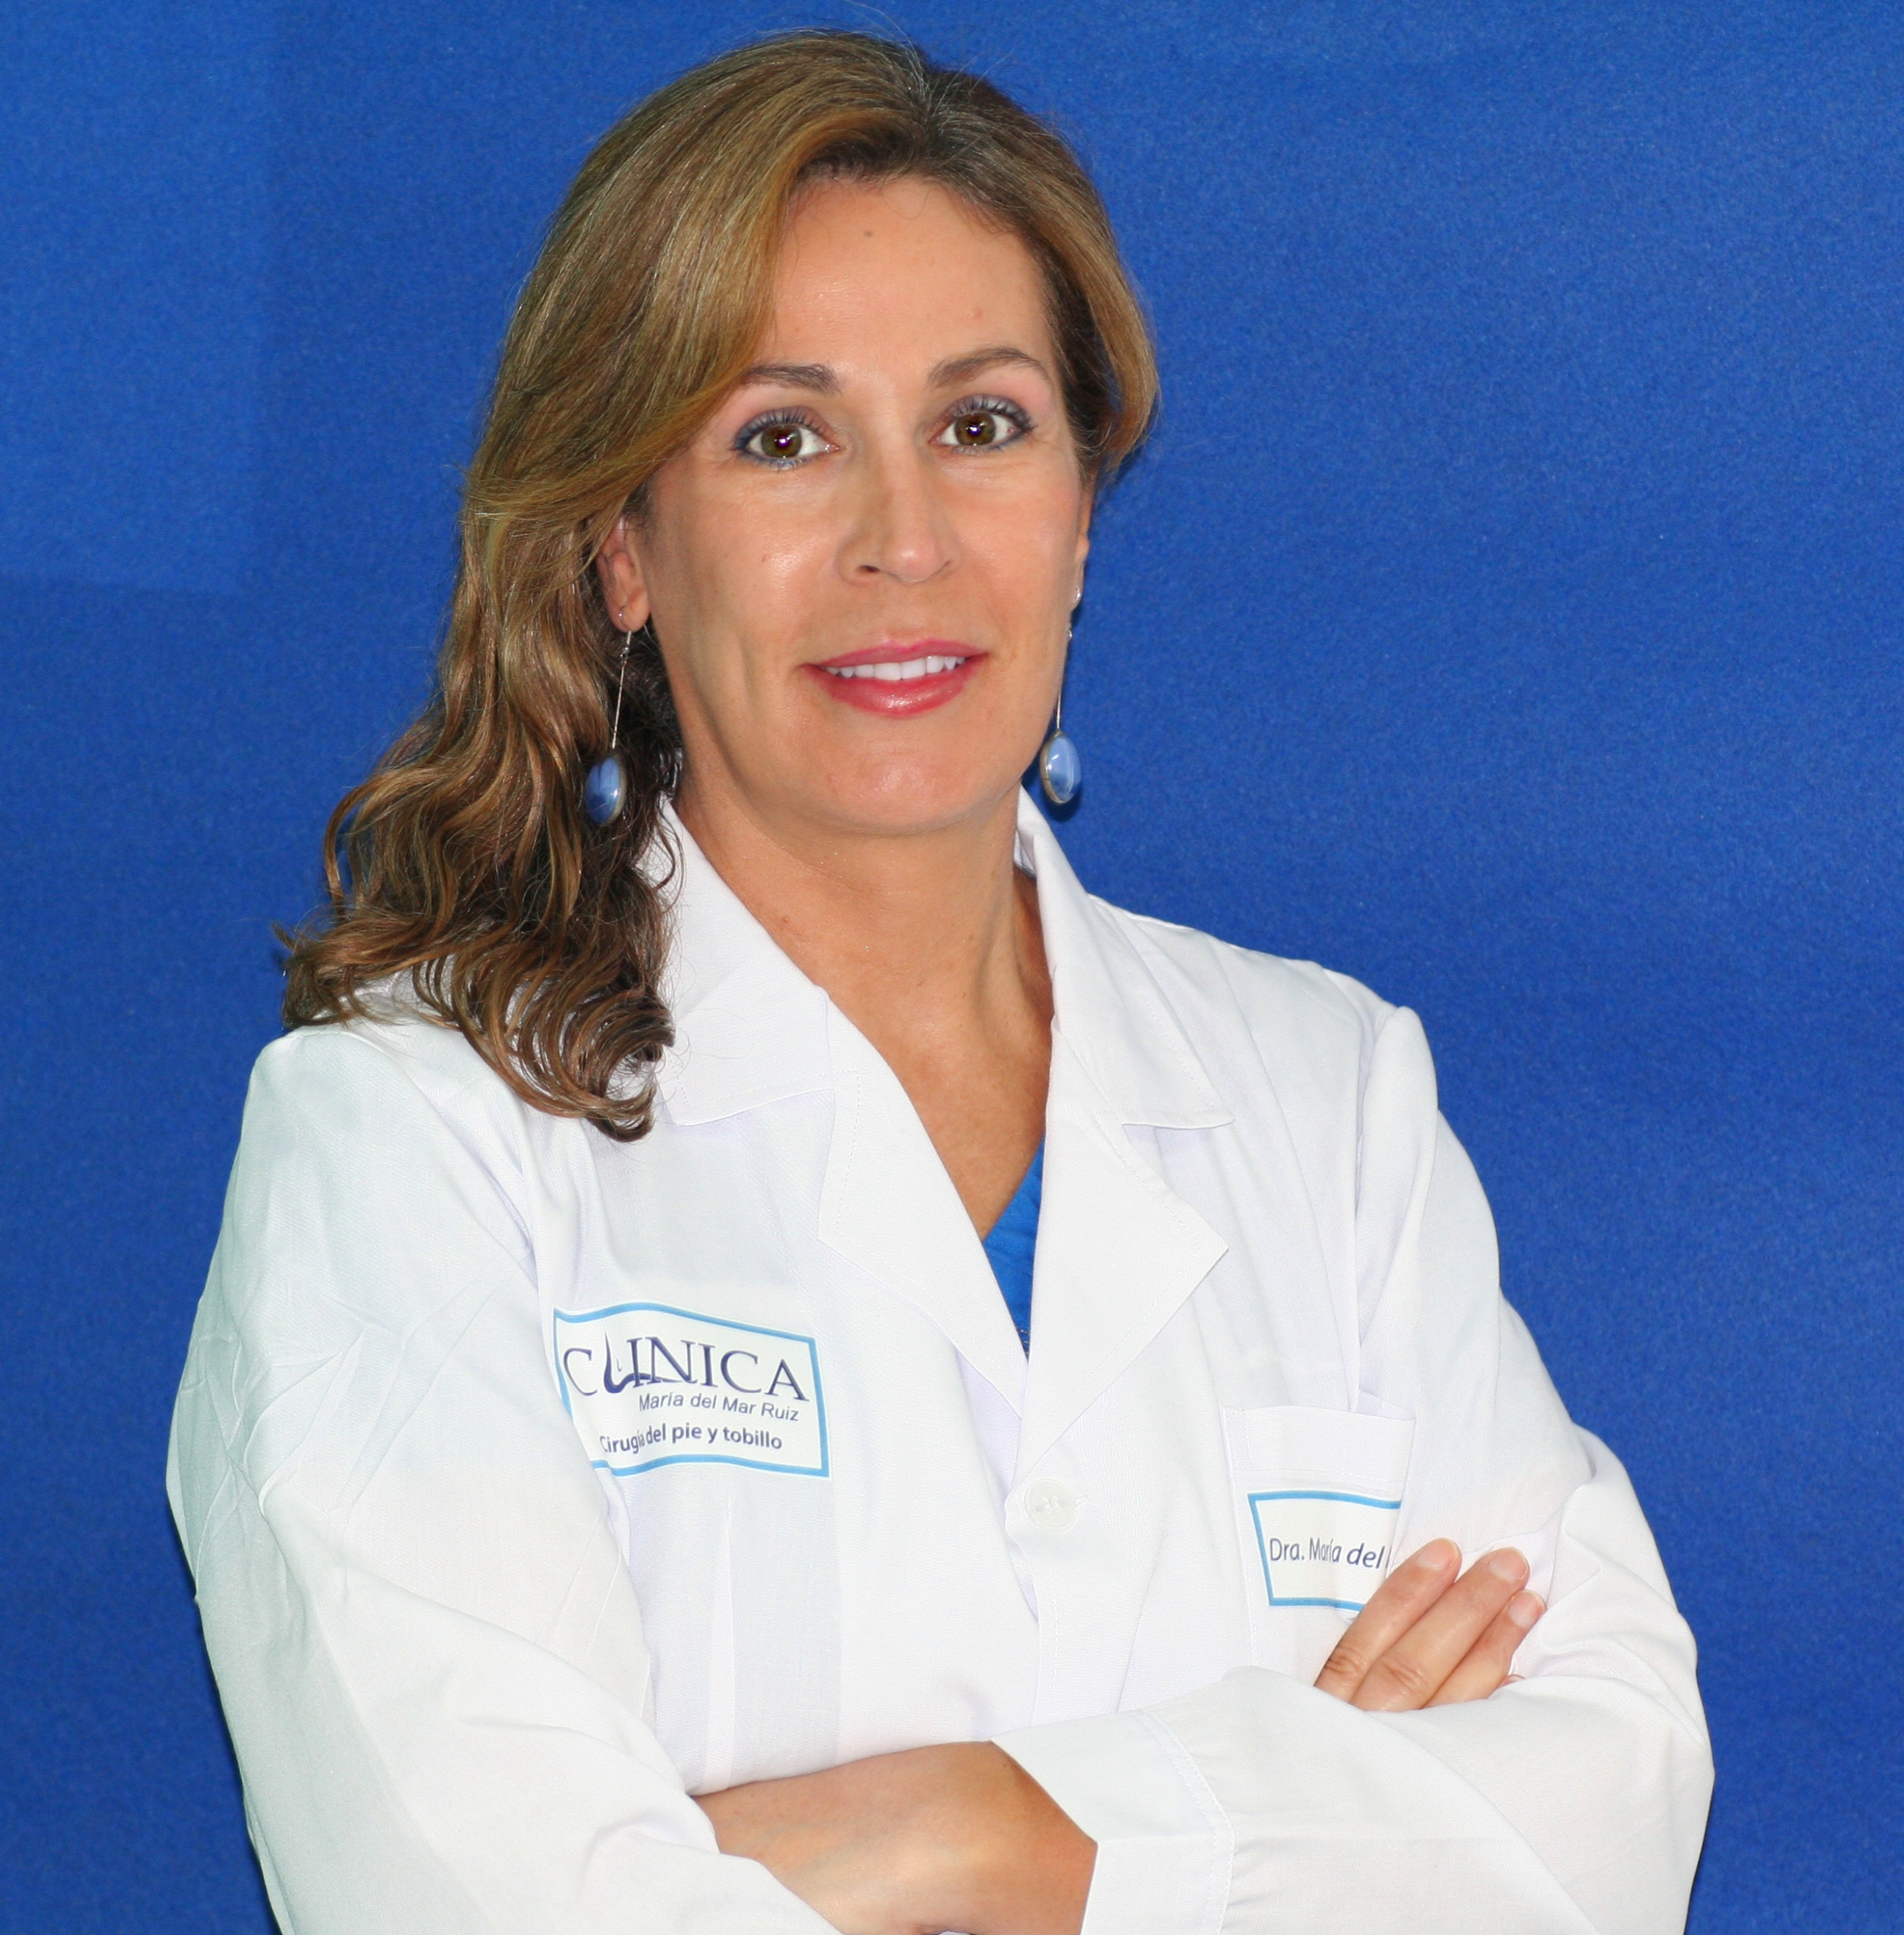 Dra. Mª del Mar Ruíz Herrera